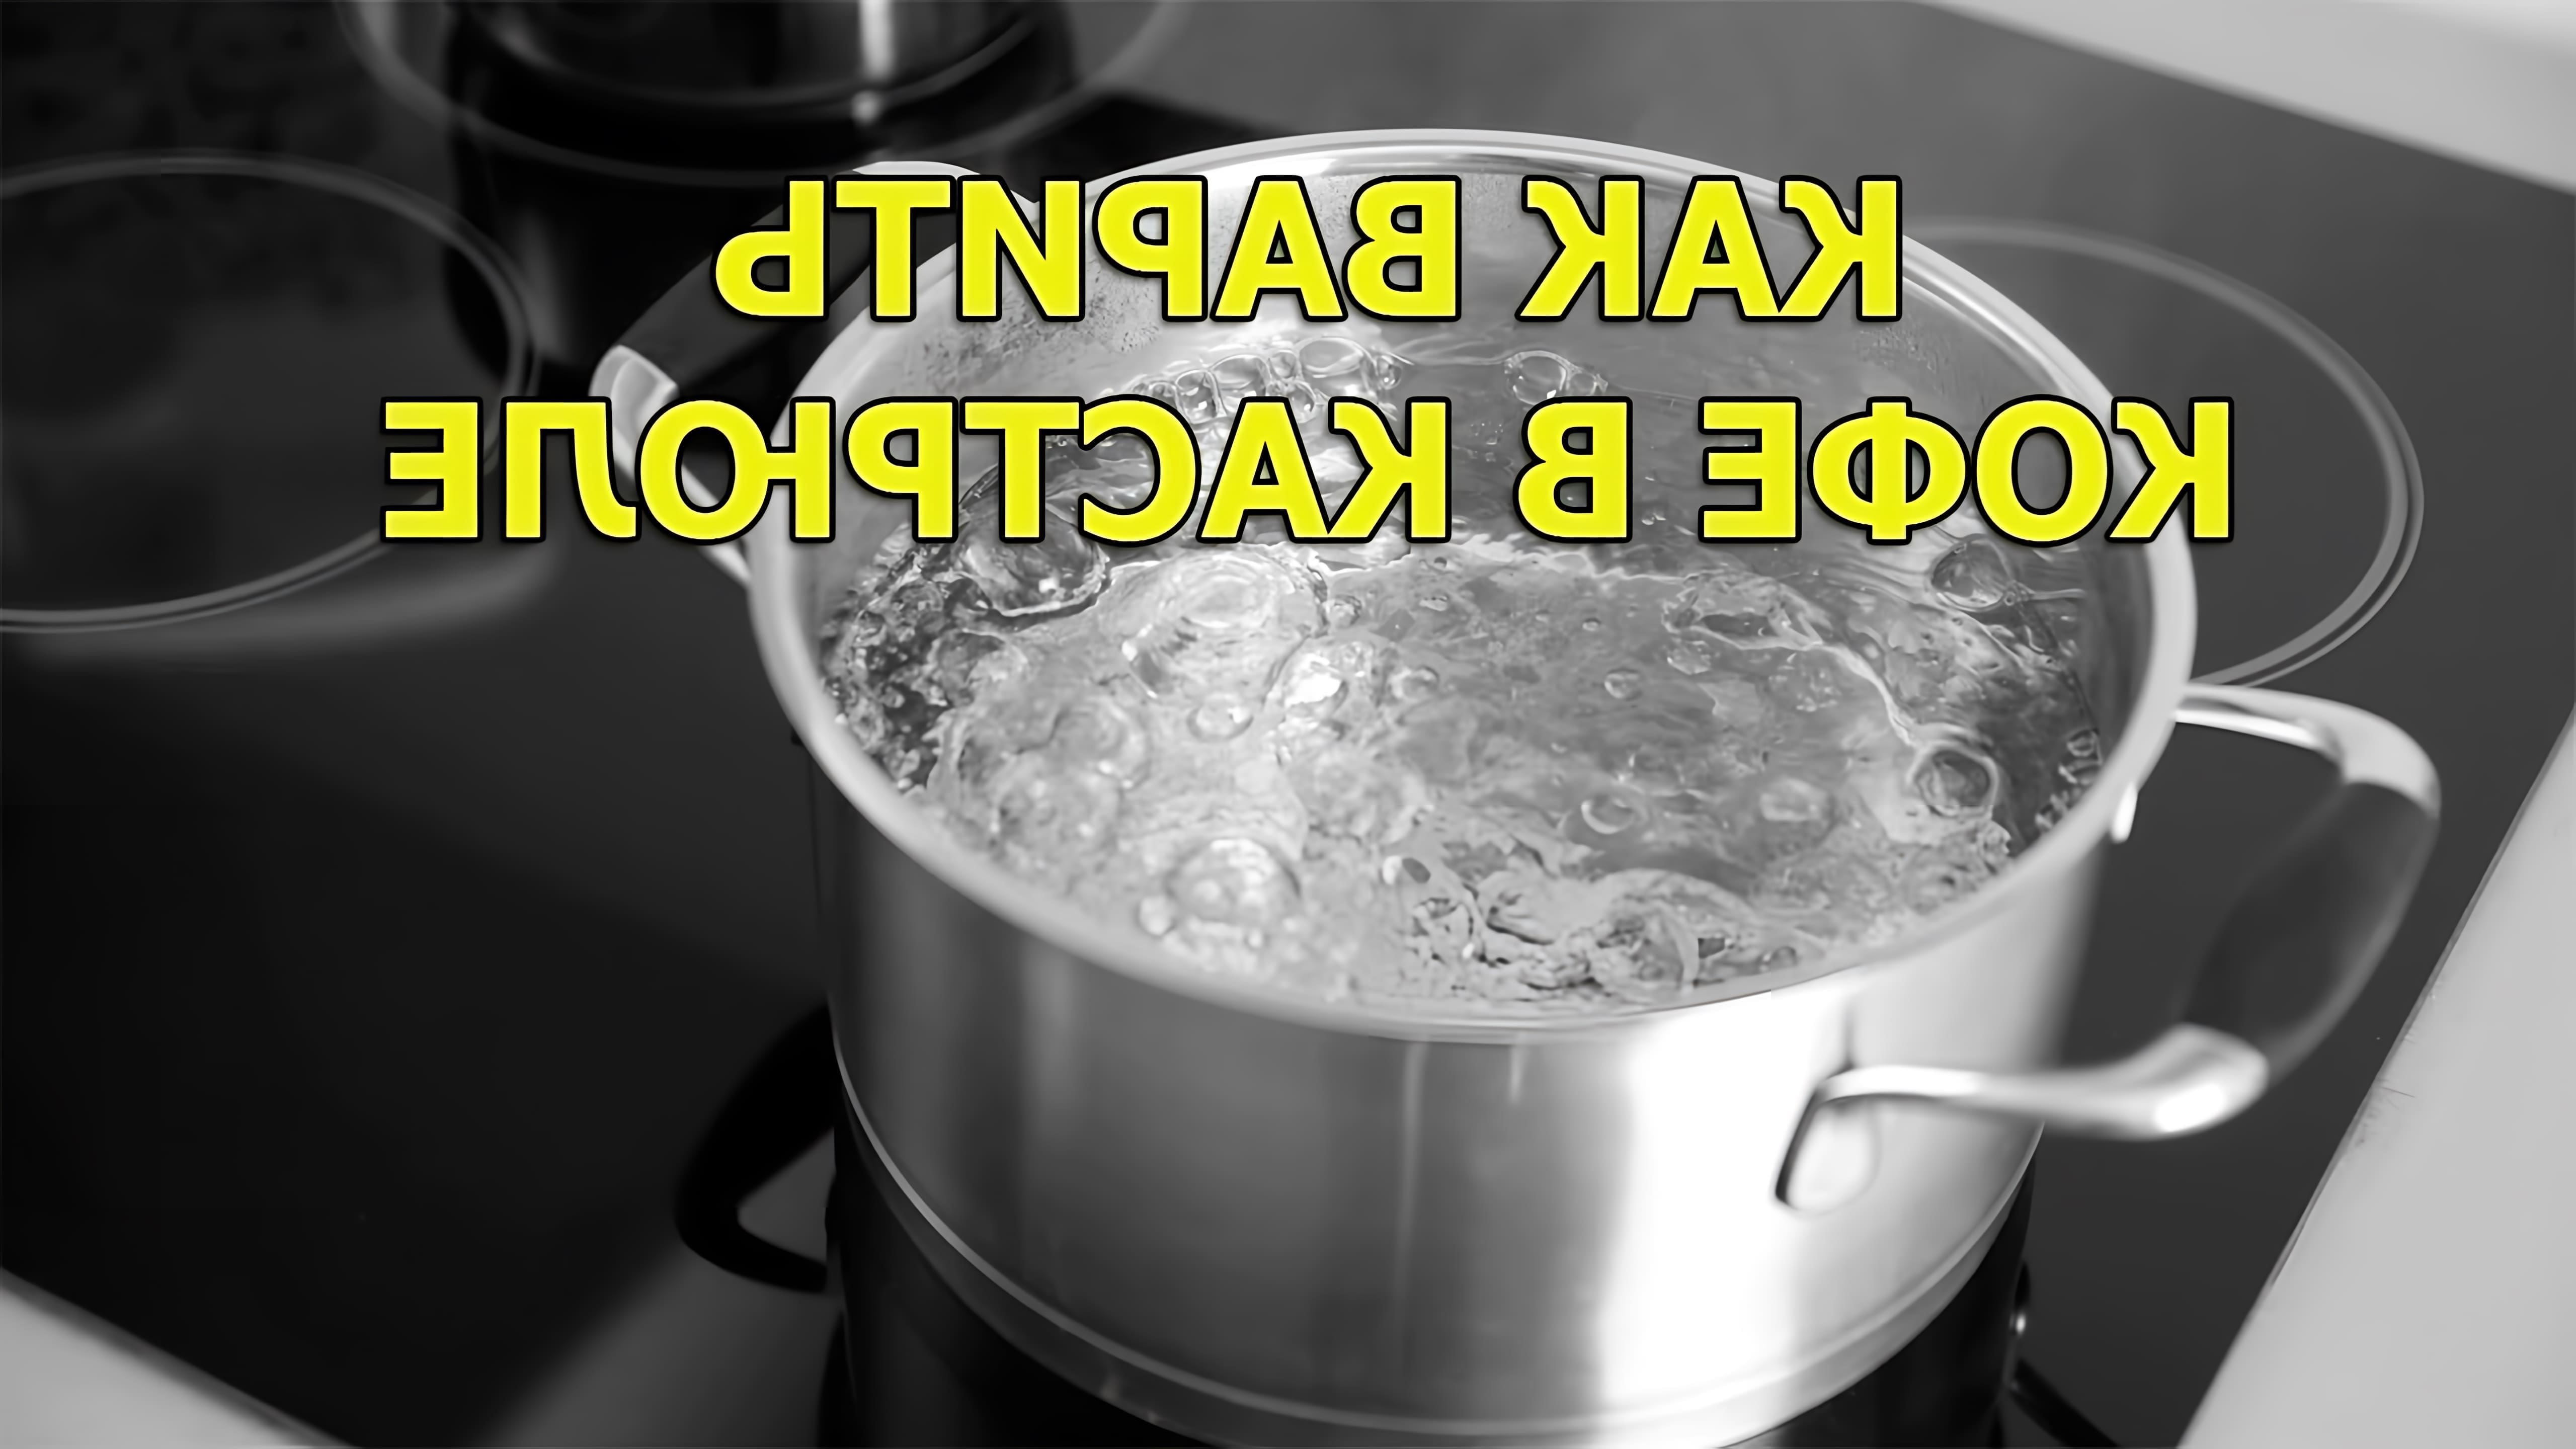 В этом видео демонстрируется, как варить кофе в кастрюле